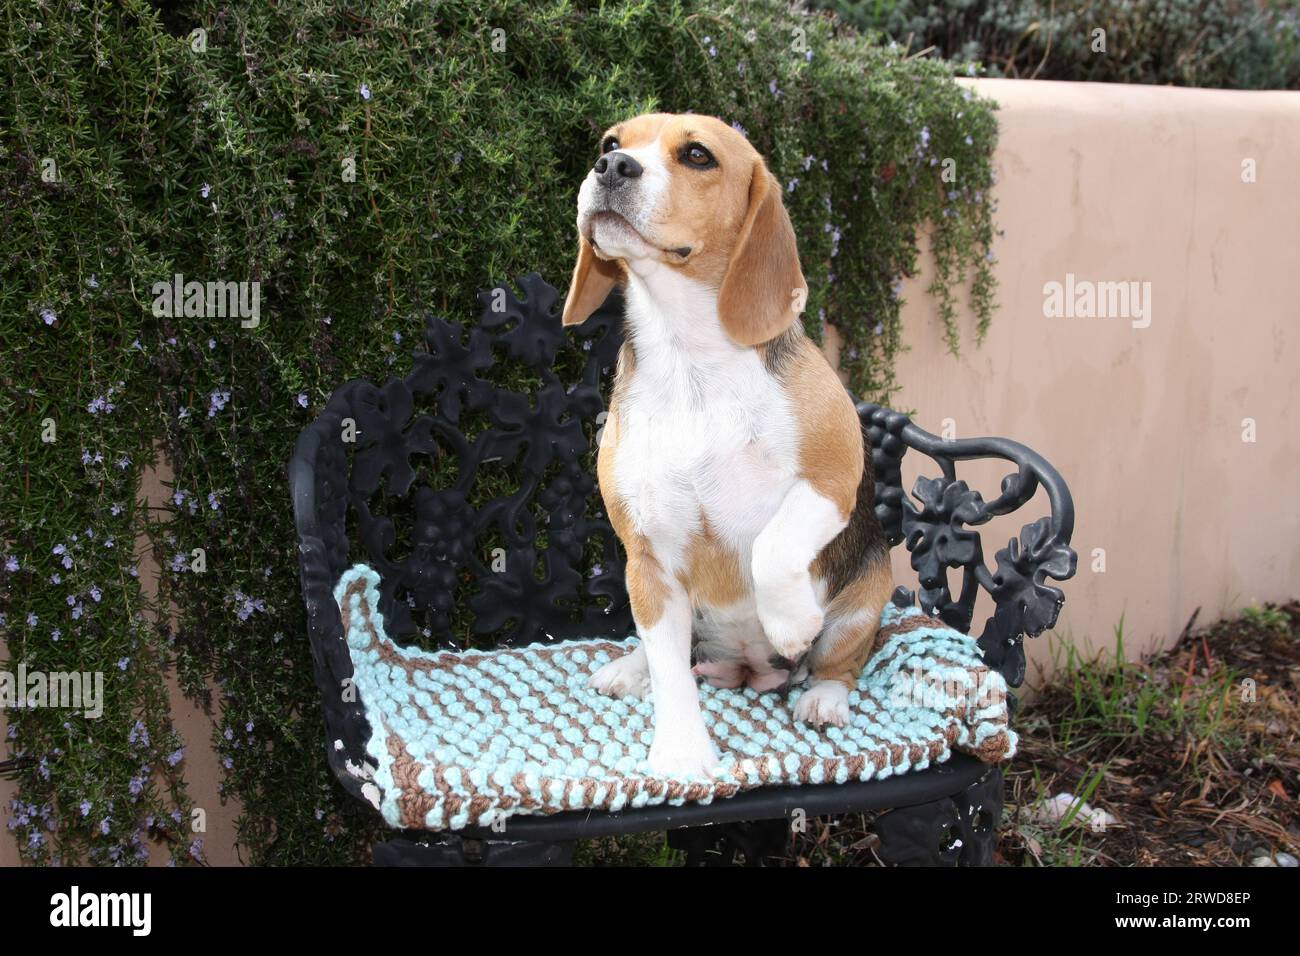 Beagle seduto su una sedia in ferro battuto con imbottitura davanti a una parete con vegetazione Foto Stock